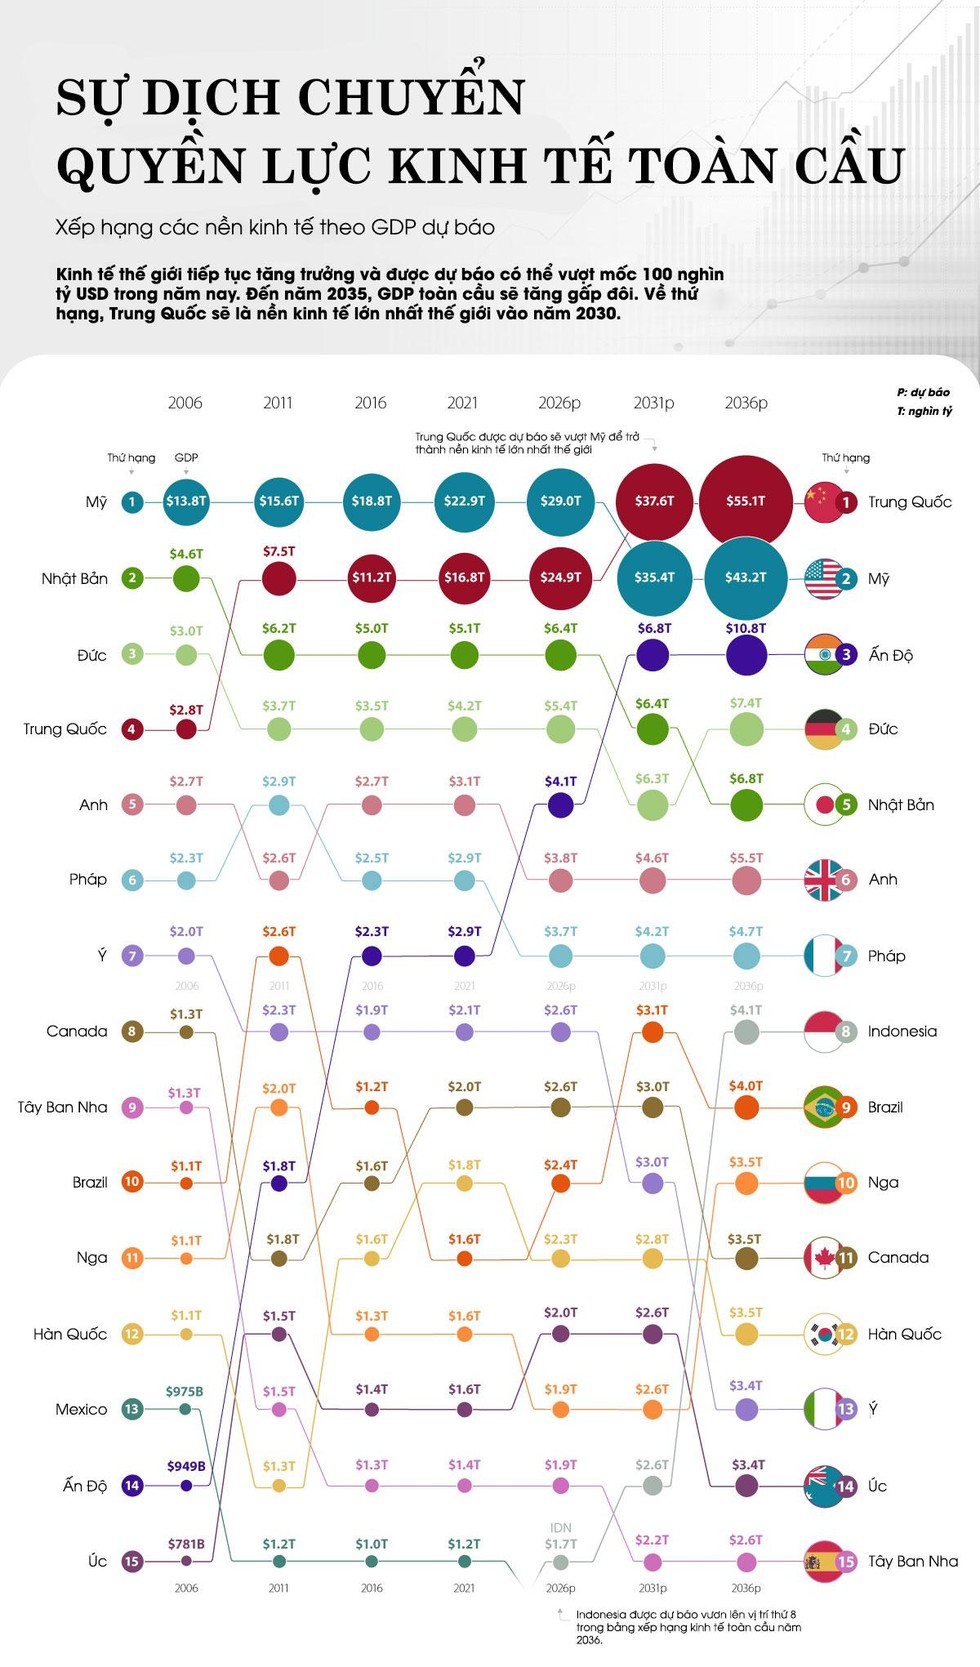 [Infographic] Sự dịch chuyển quyền lực kinh tế toàn cầu ảnh 1